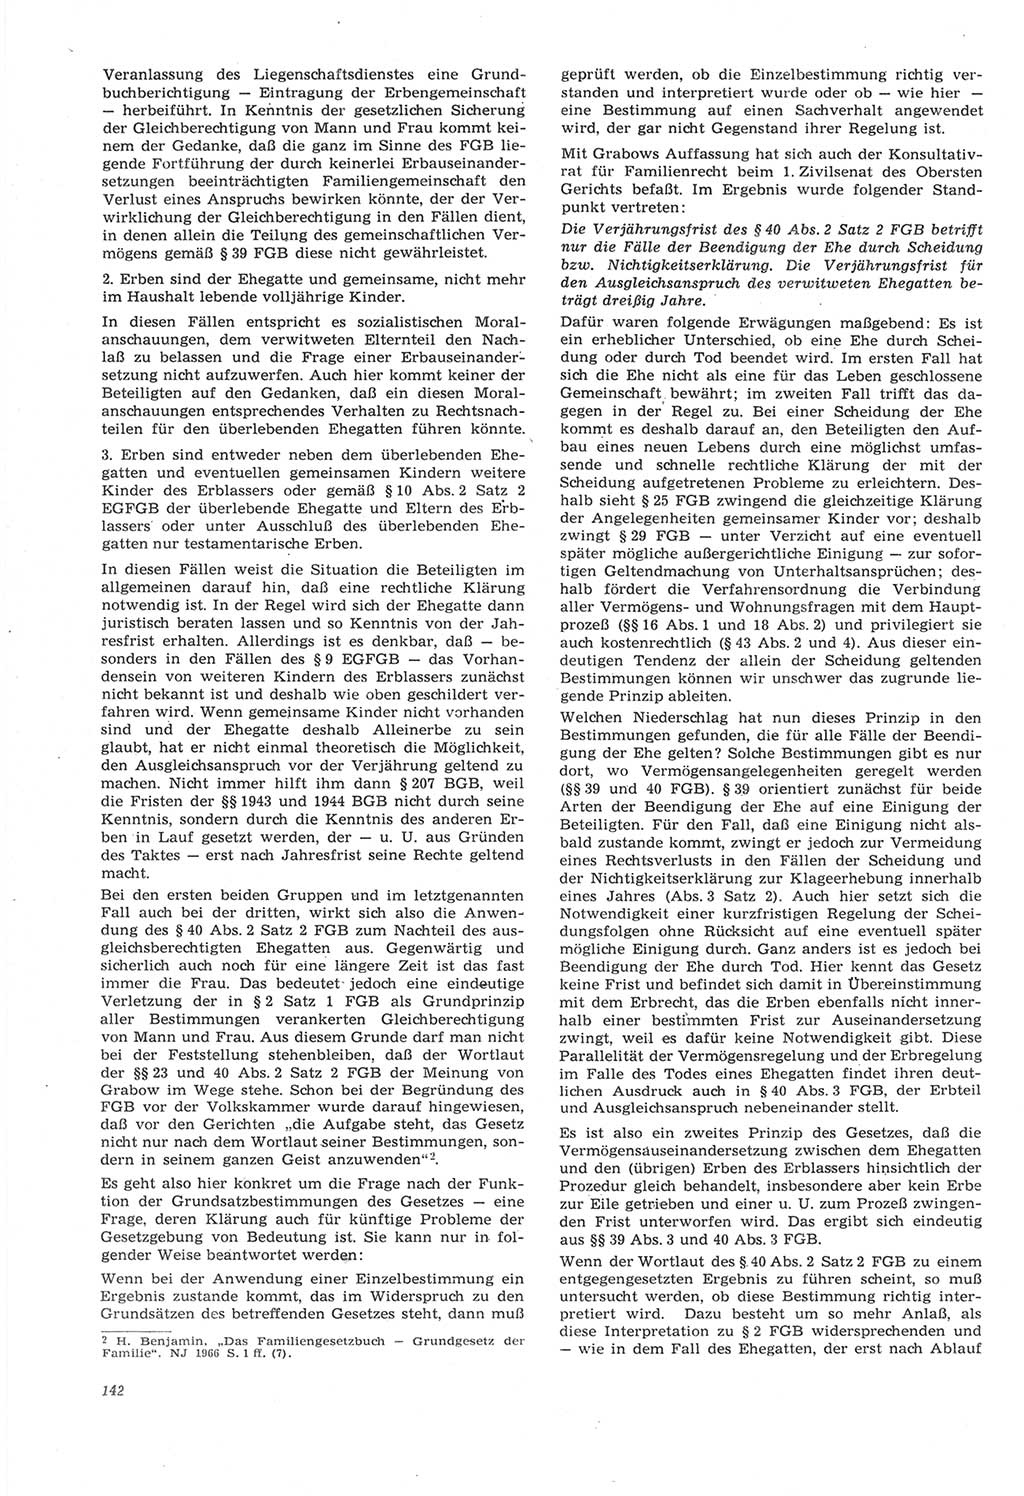 Neue Justiz (NJ), Zeitschrift für Recht und Rechtswissenschaft [Deutsche Demokratische Republik (DDR)], 22. Jahrgang 1968, Seite 142 (NJ DDR 1968, S. 142)